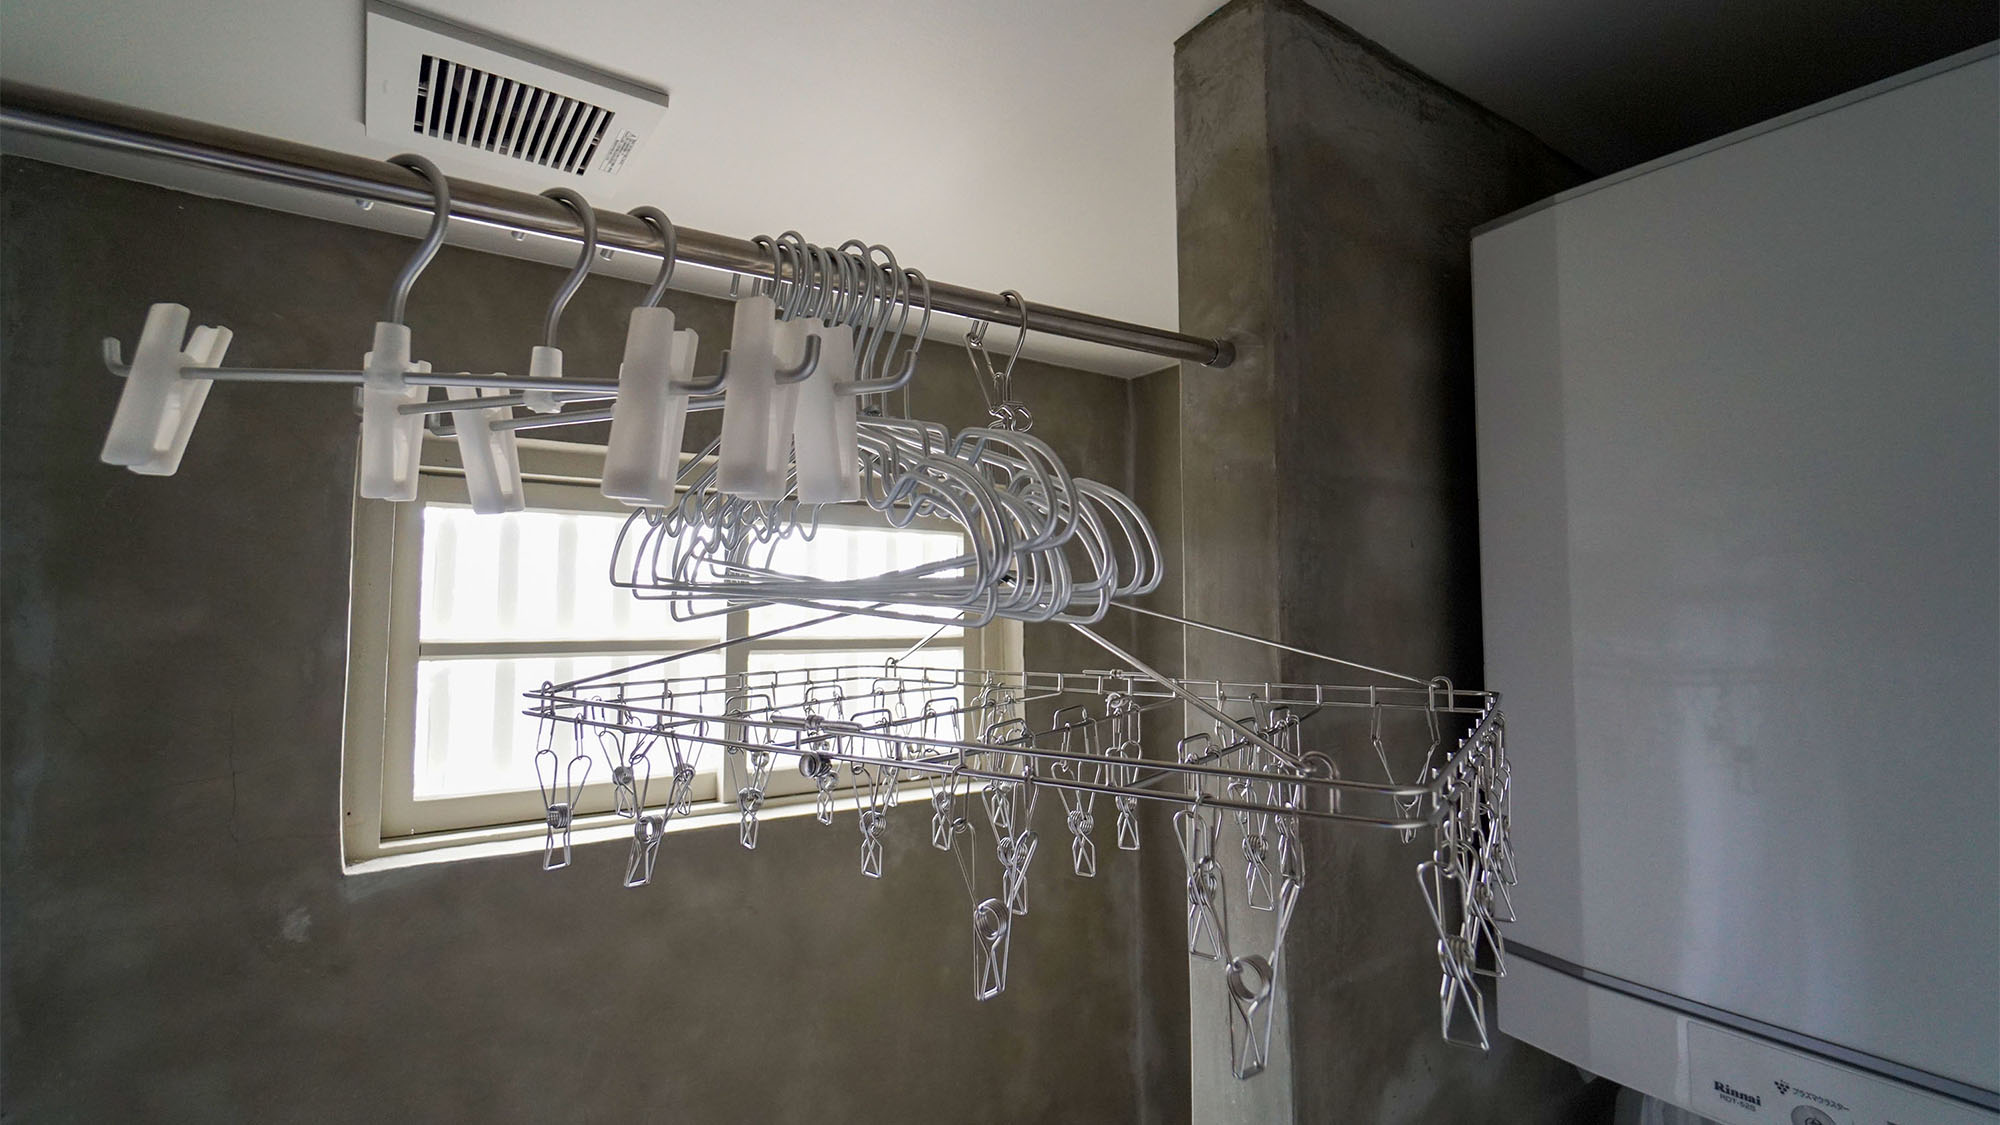 ・洗濯ハンガー / Laundry hanger